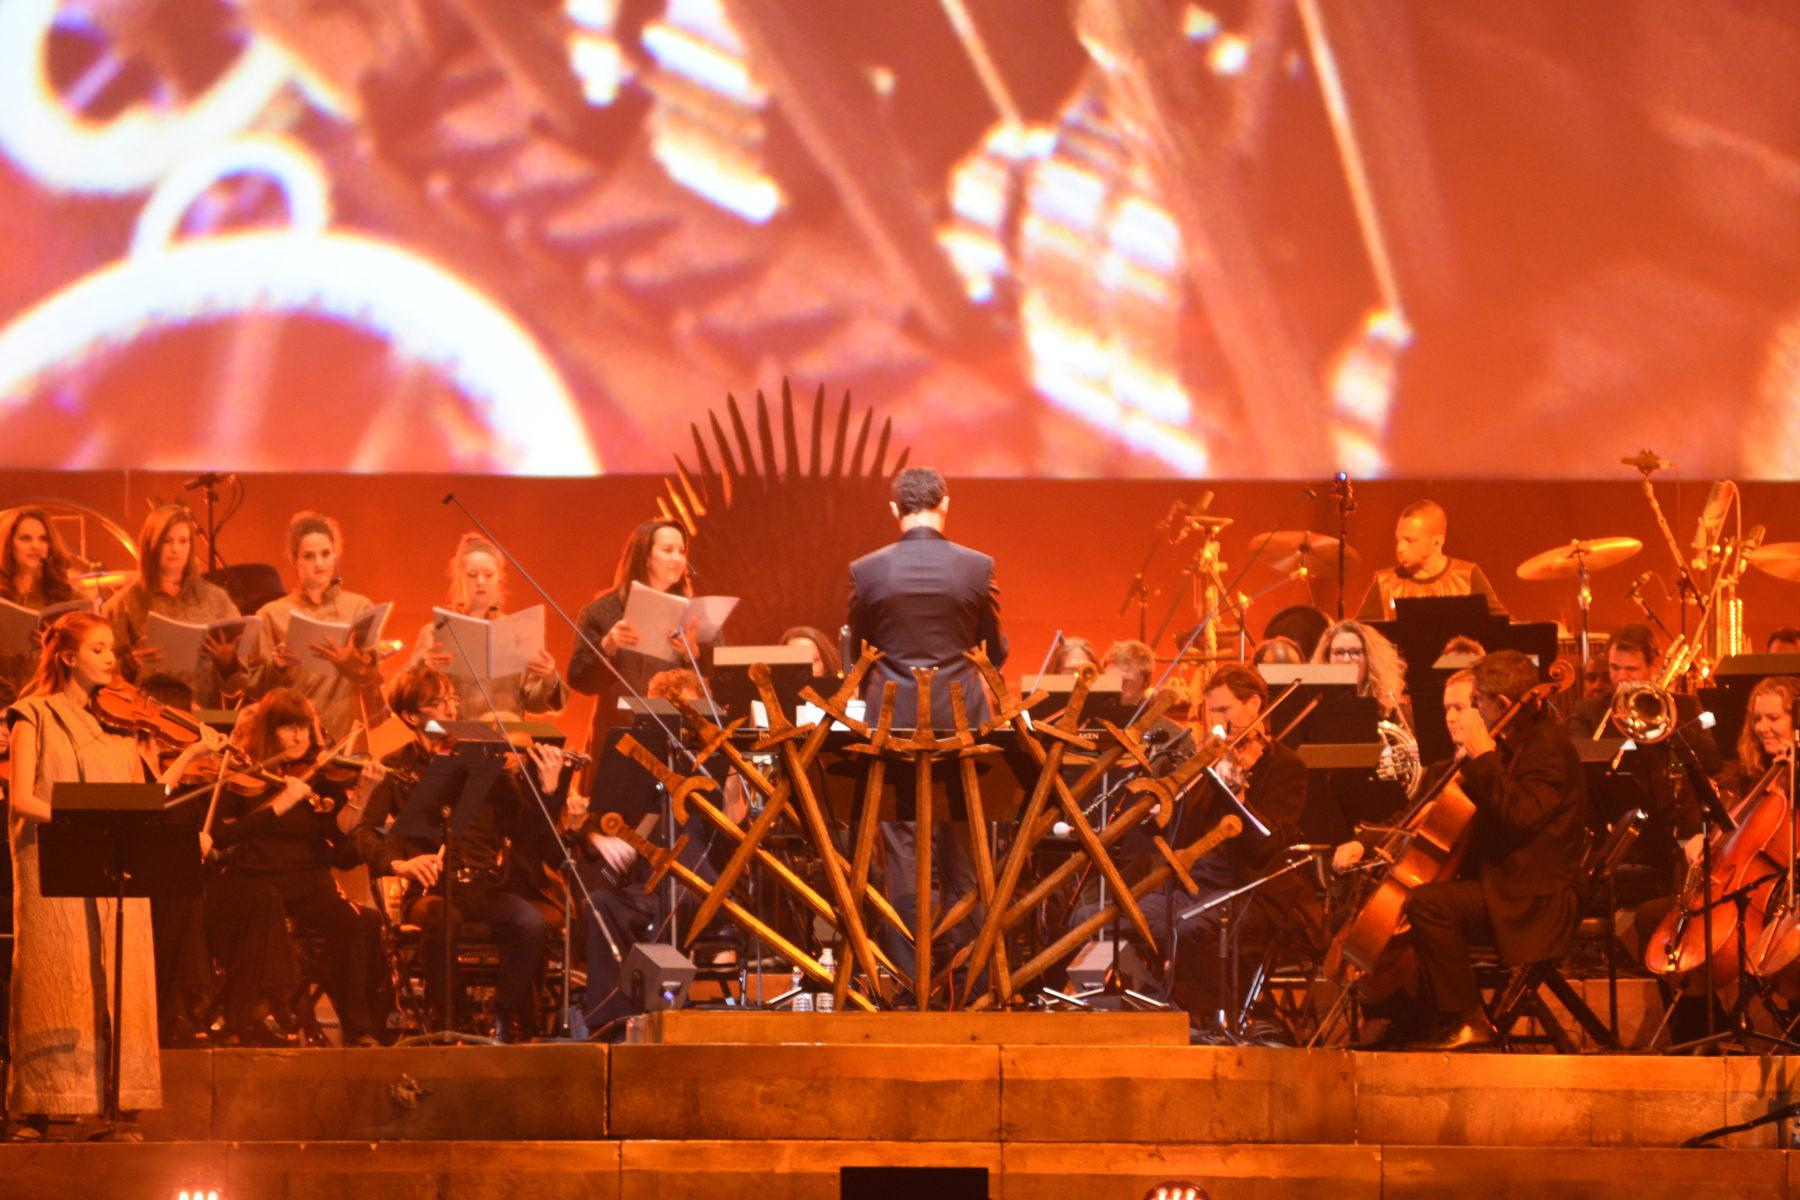 Game+of+Thrones+live+concert+returns+to+Denver%2C+brings+fans+together